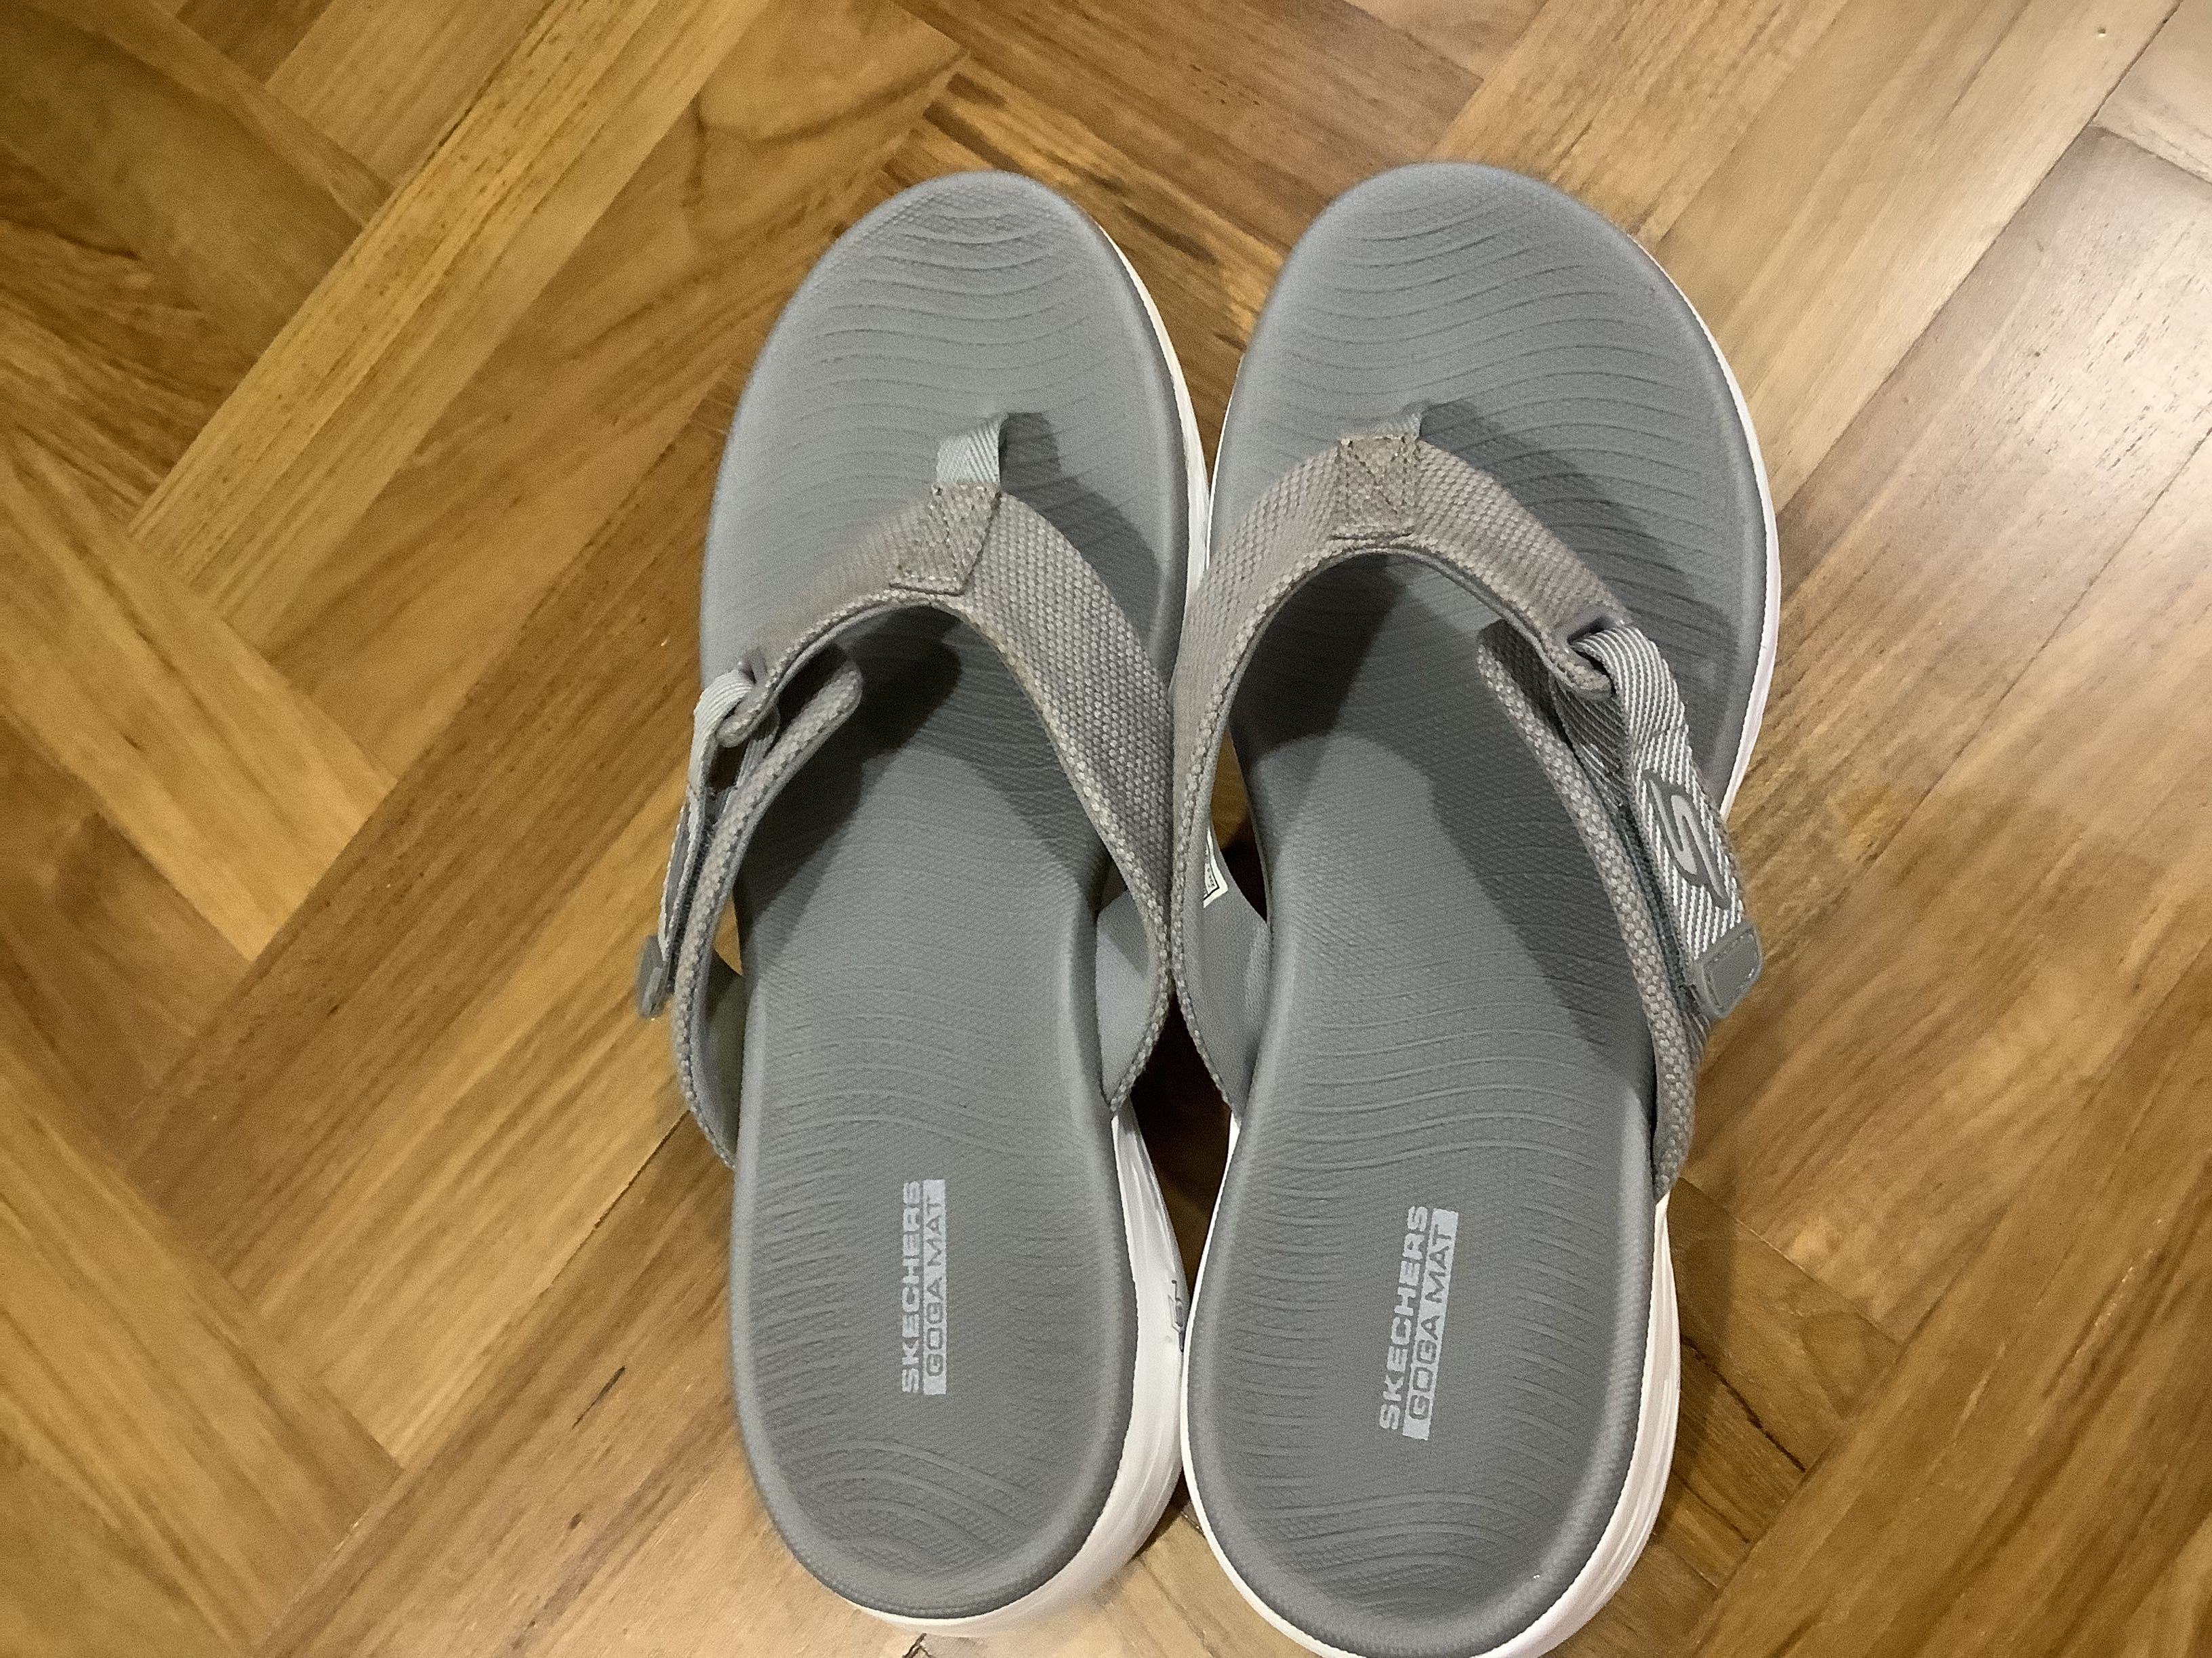 Skechers Mat slippers (grey), Women's Footwear, Flipflops and Slides on